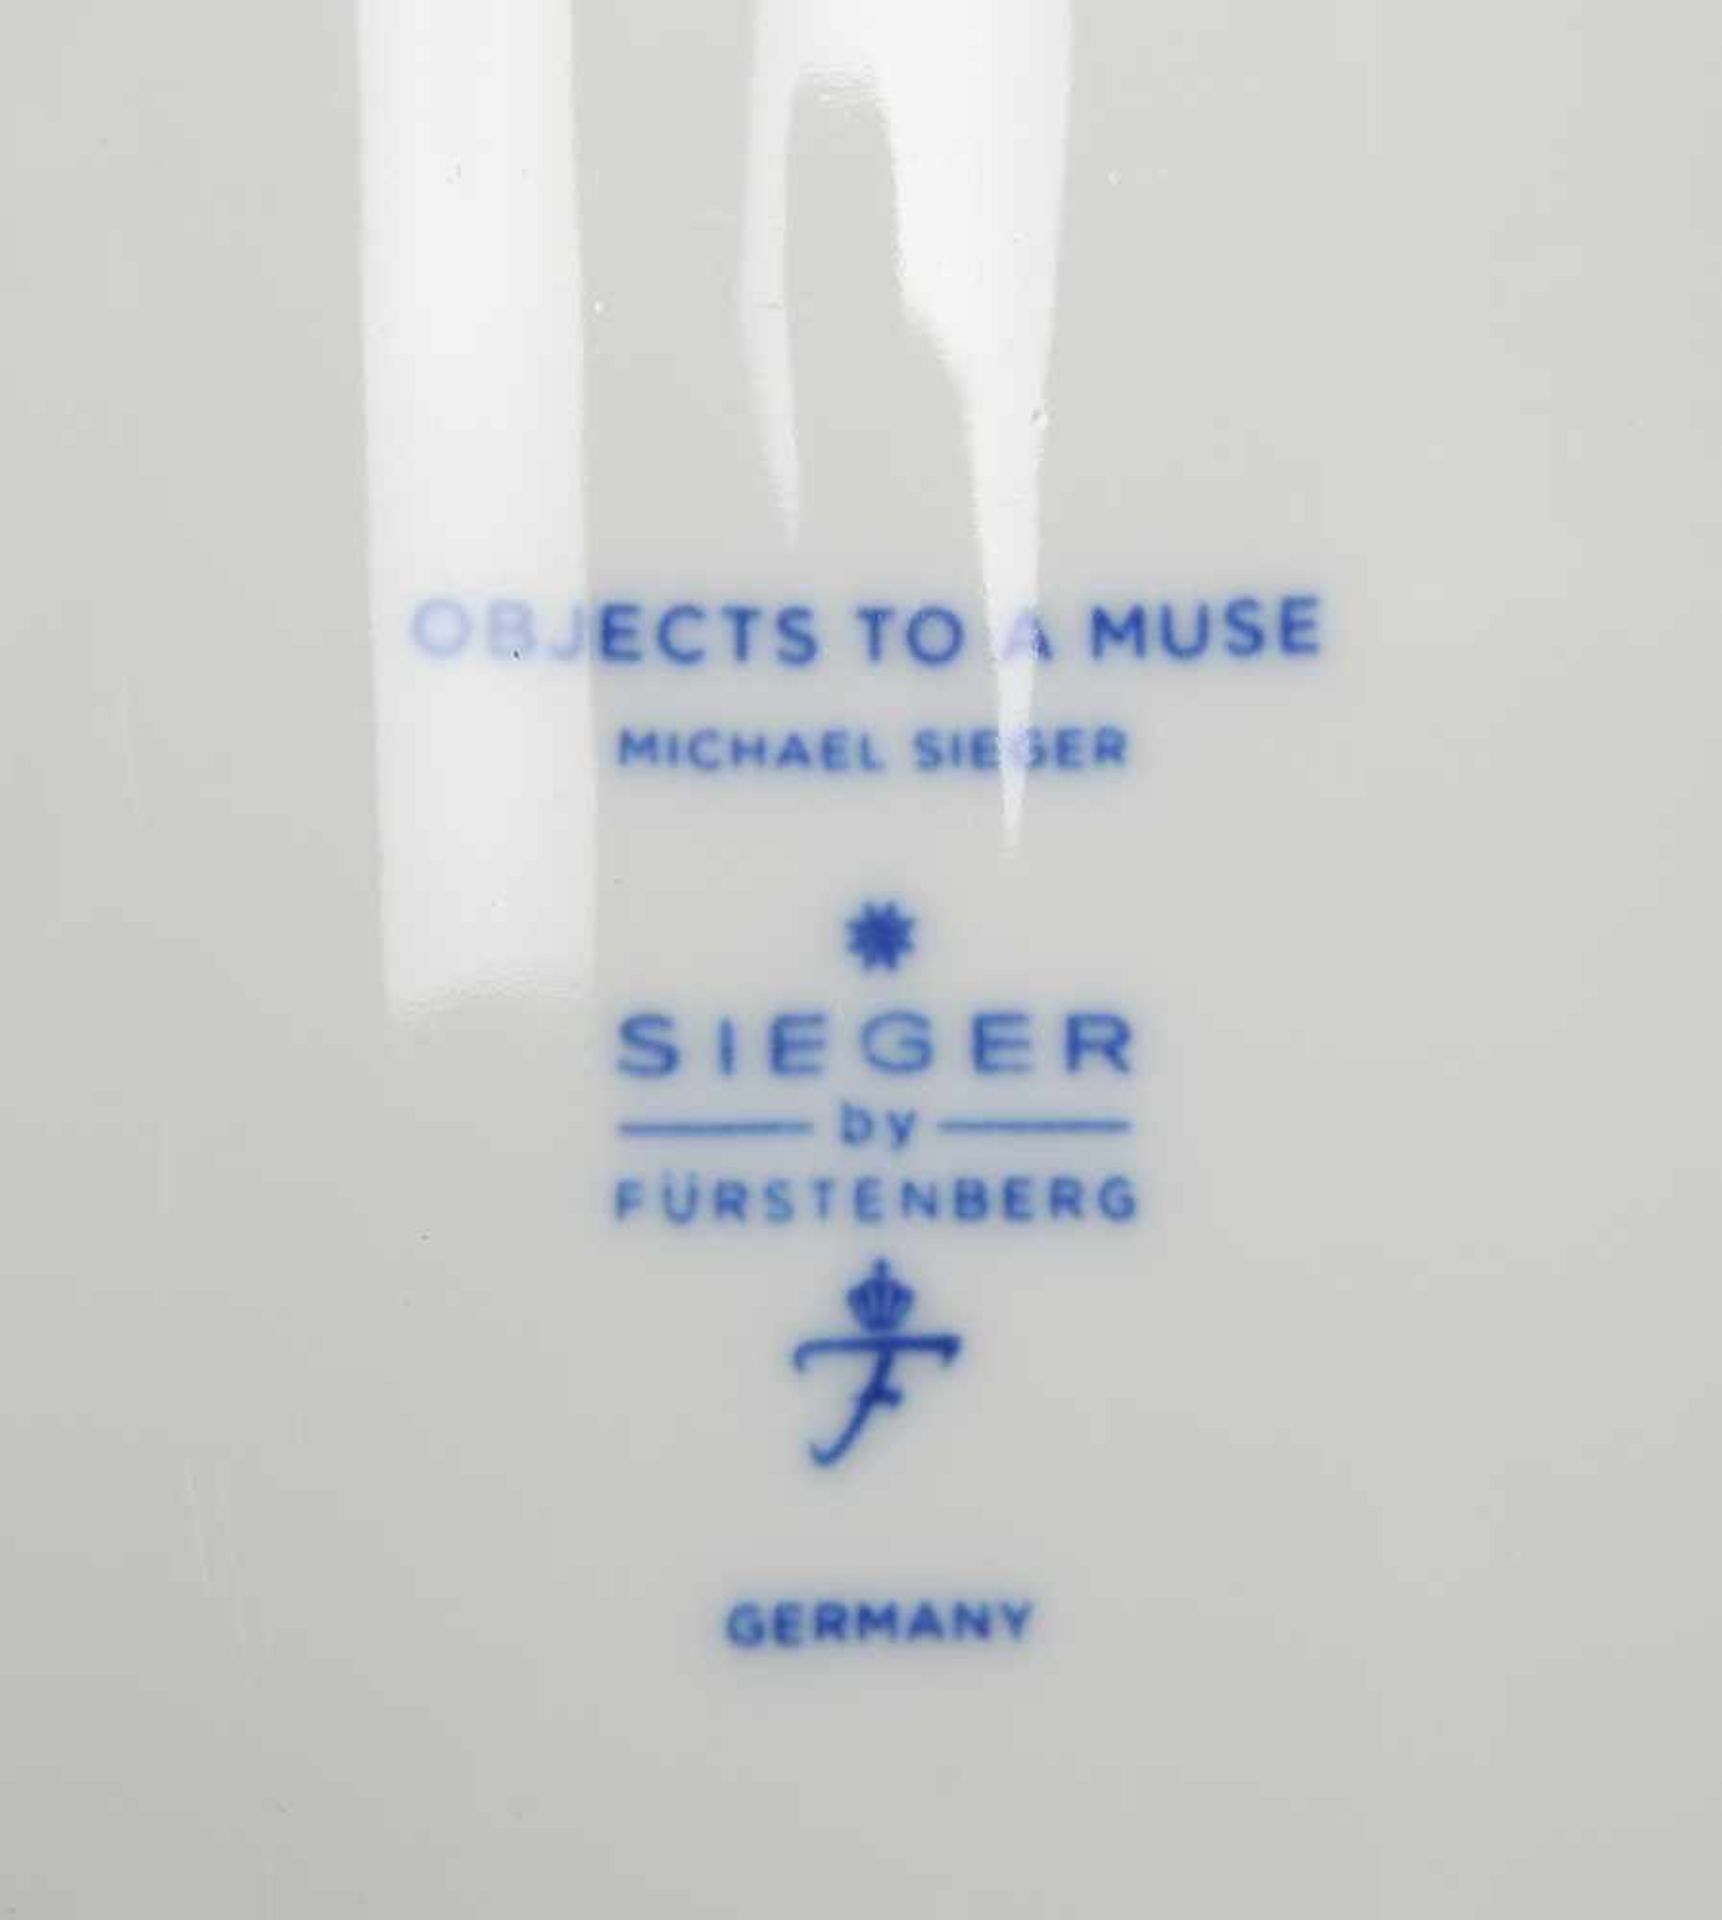 Fürstenberg/'Sieger by Fürstenberg', Vasen-Konvolut, 4 Stück: 'Objects to a Muse', jeweils mit - Image 2 of 2